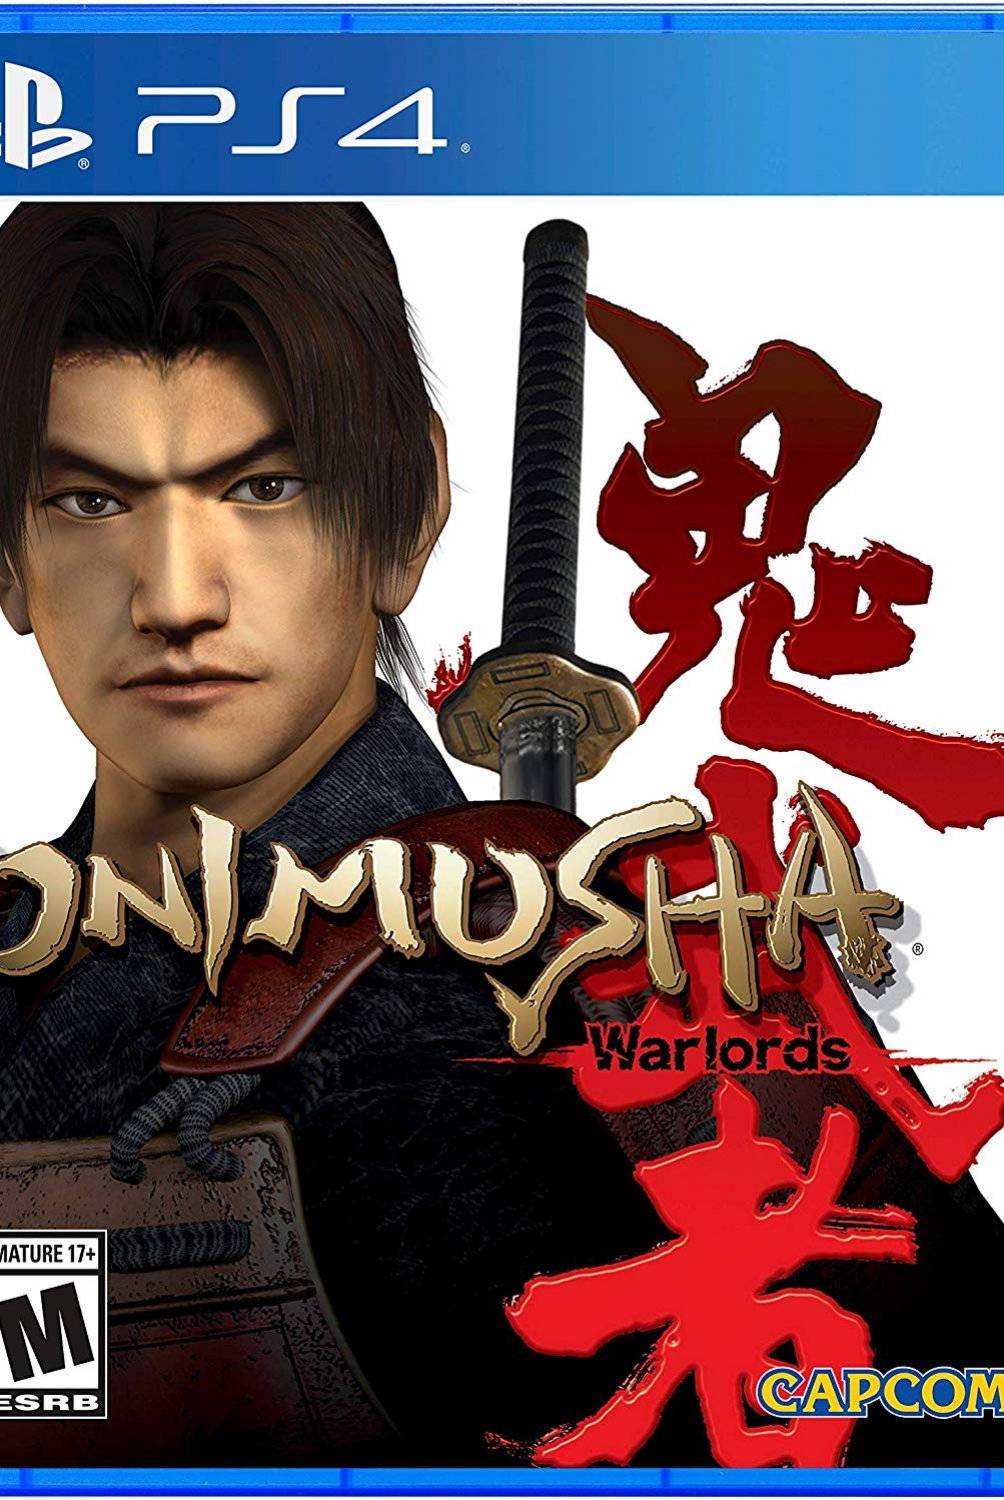 SONY - Onimusha Warlords (PS4)